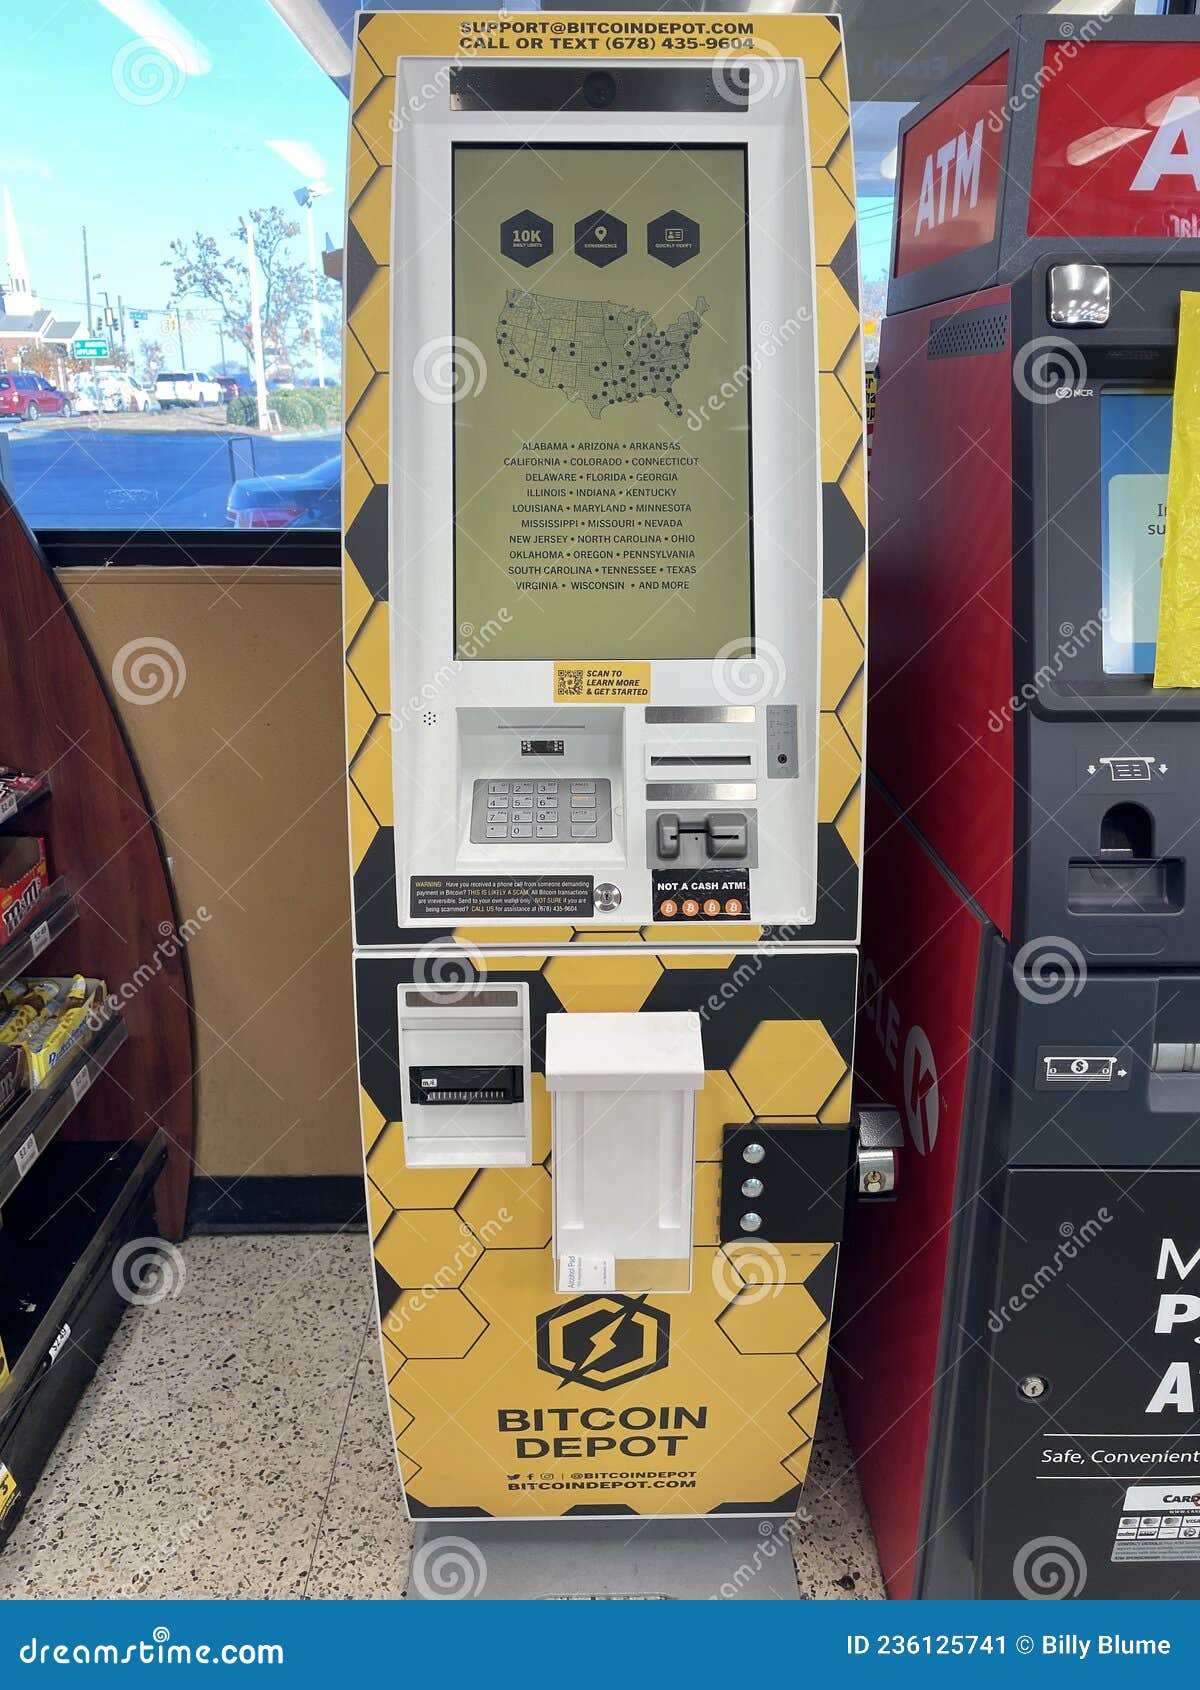 Coinhub Bitcoin ATM Near Me Pleasant Grove, Alabama | Buy Bitcoin - $25, Daily!